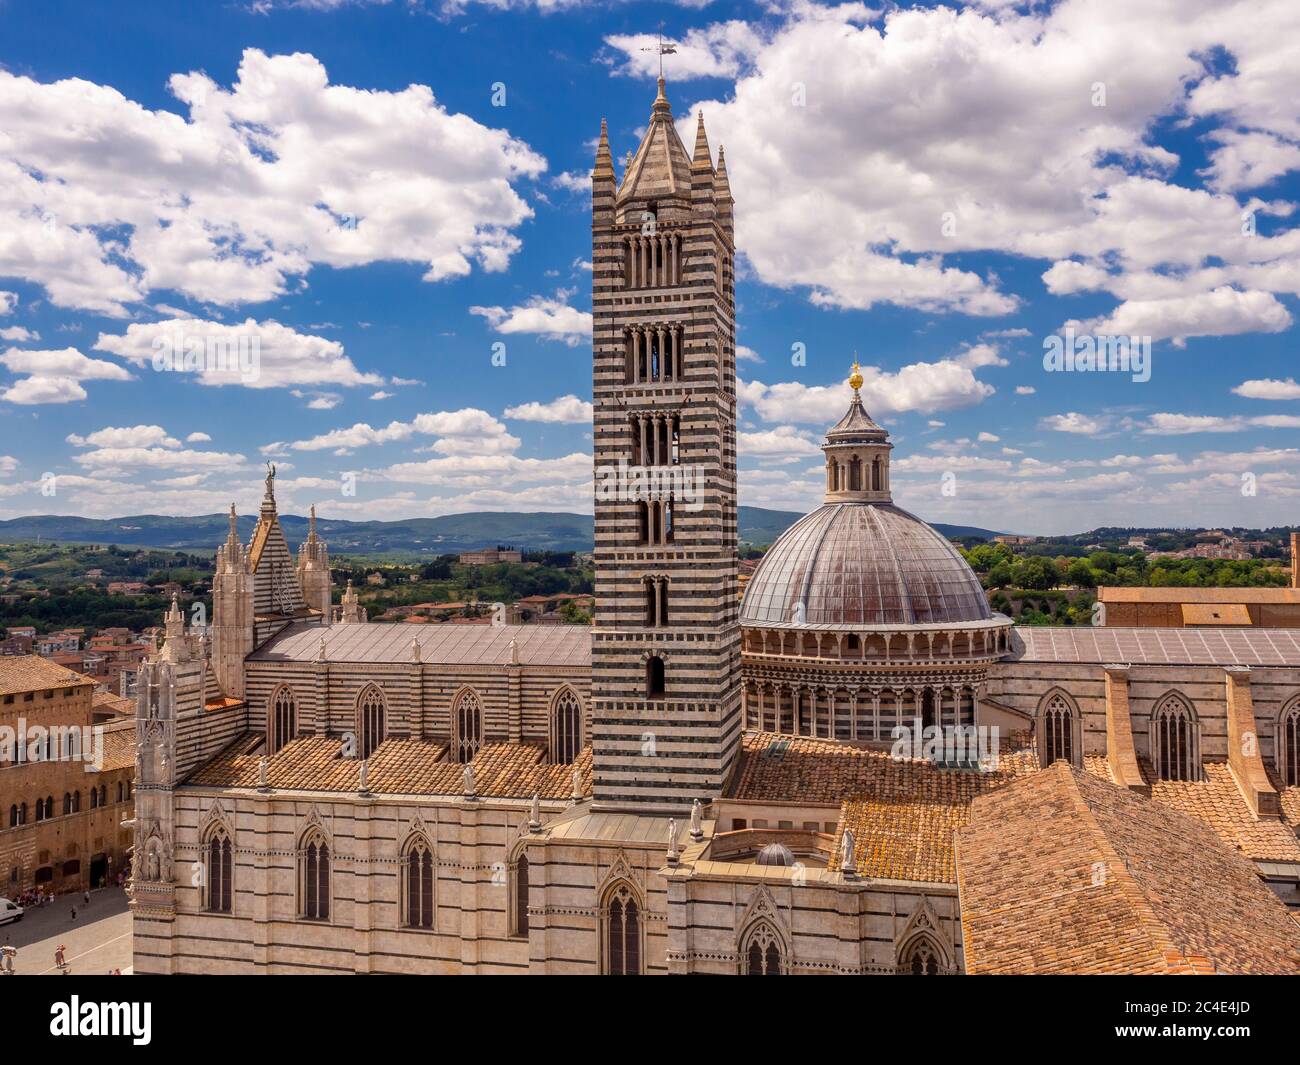 El campanario y la cúpula de la Catedral de Siena visto desde el lado sureste. Siena. Italia. Foto de stock